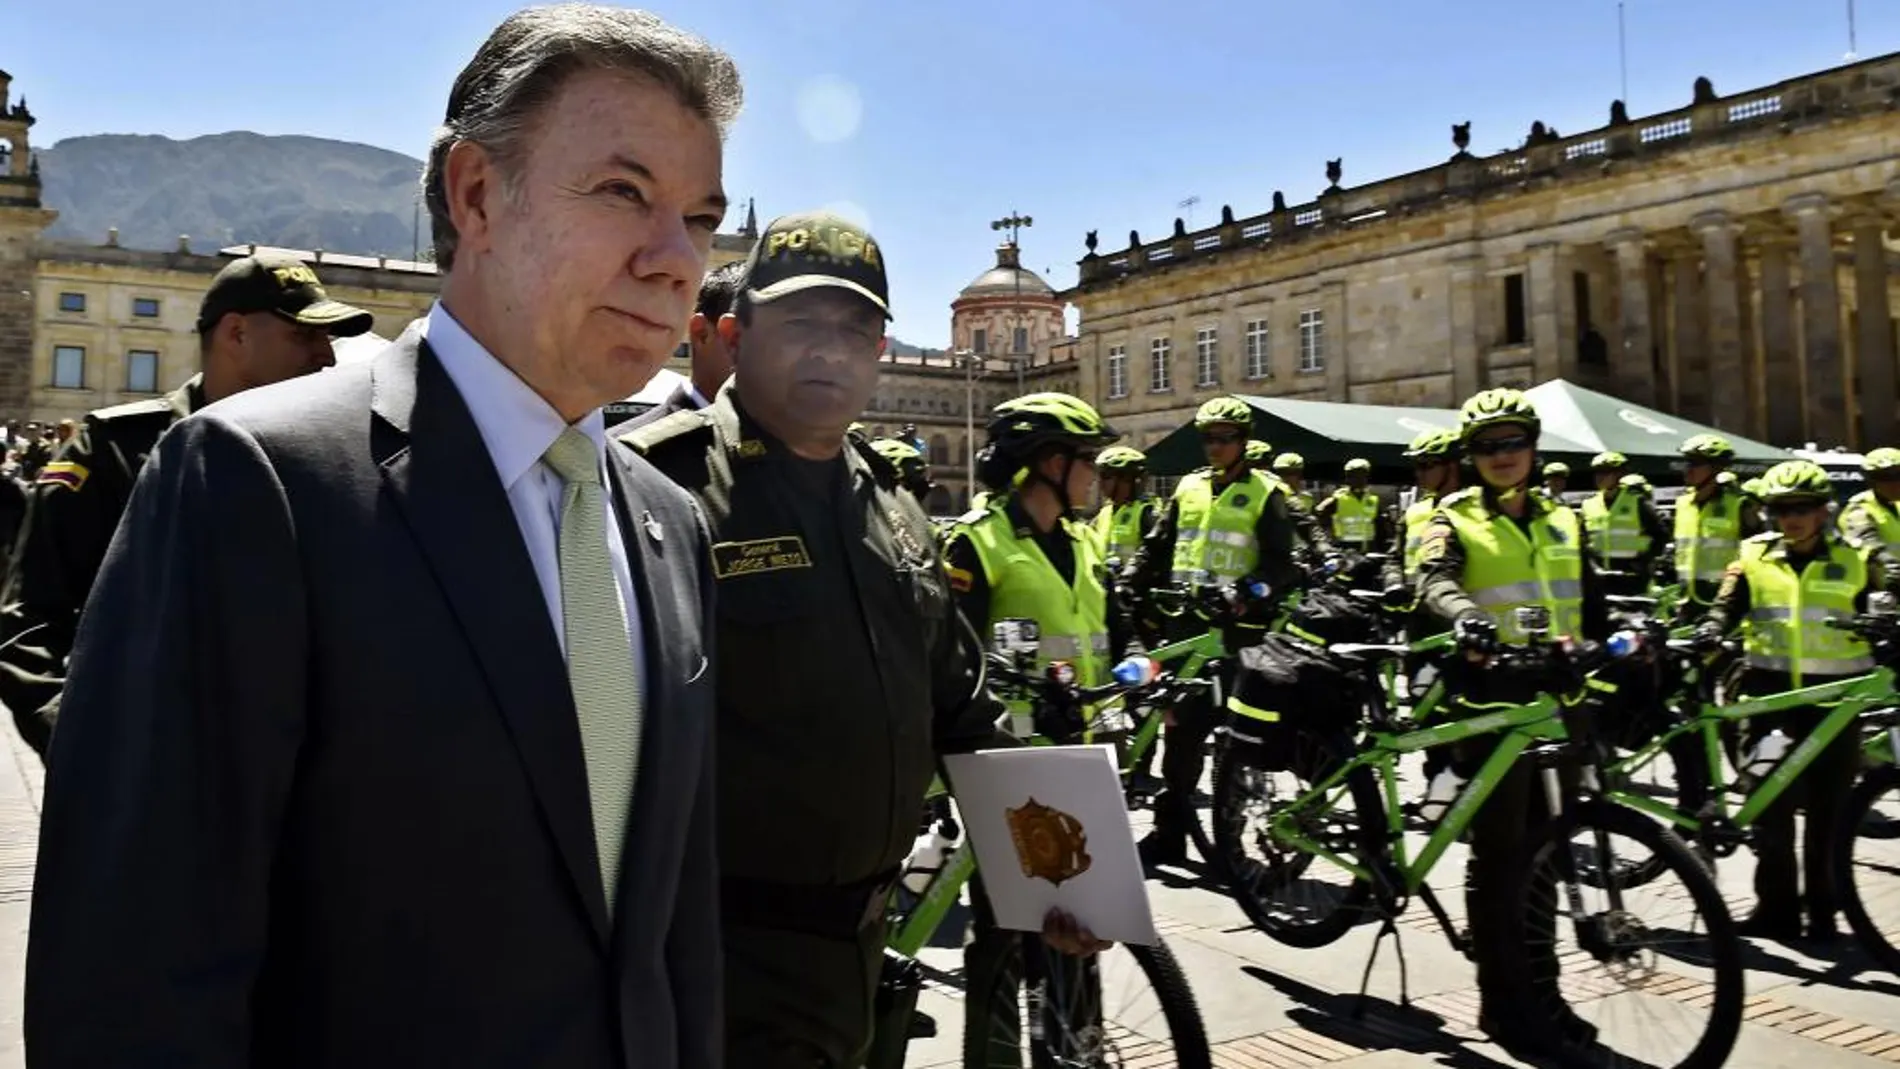 Fotografía cedida por la presidencia de Colombia del presidente de Colombia Juan Manuel Santos inspeccionando los nuevos equipos entregados a la Policía de Bogotá hoy, martes 7 de febrero de 2017, en Bogotá (Colombia)